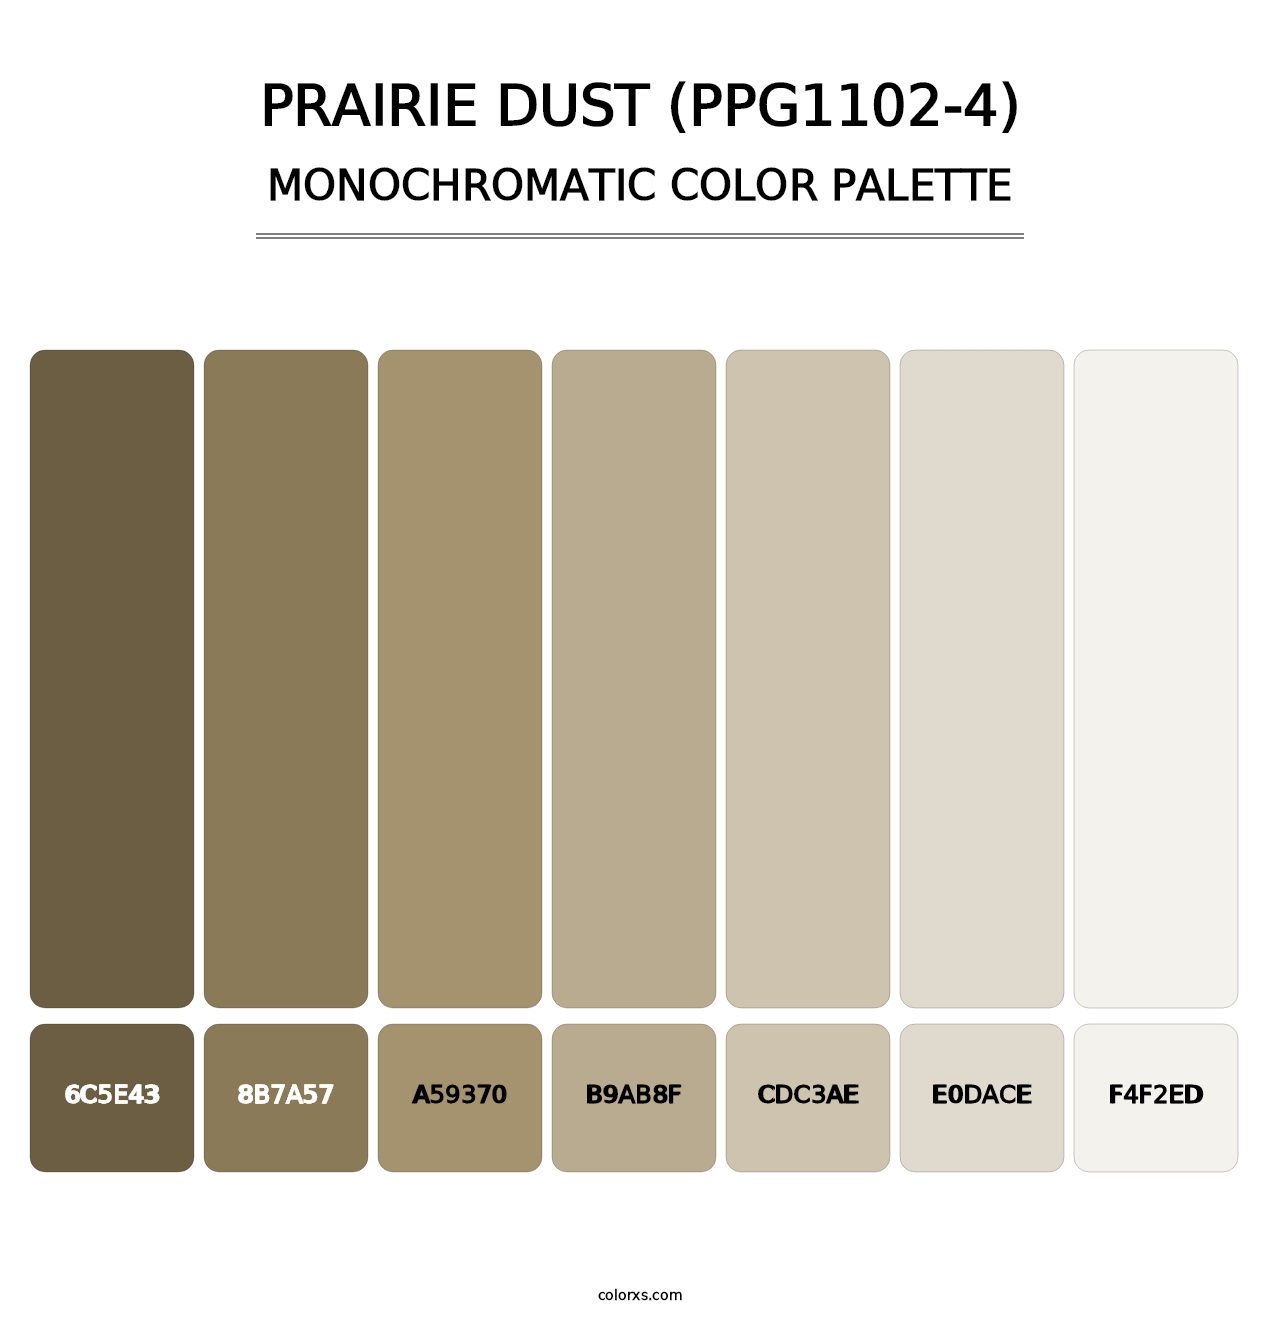 Prairie Dust (PPG1102-4) - Monochromatic Color Palette